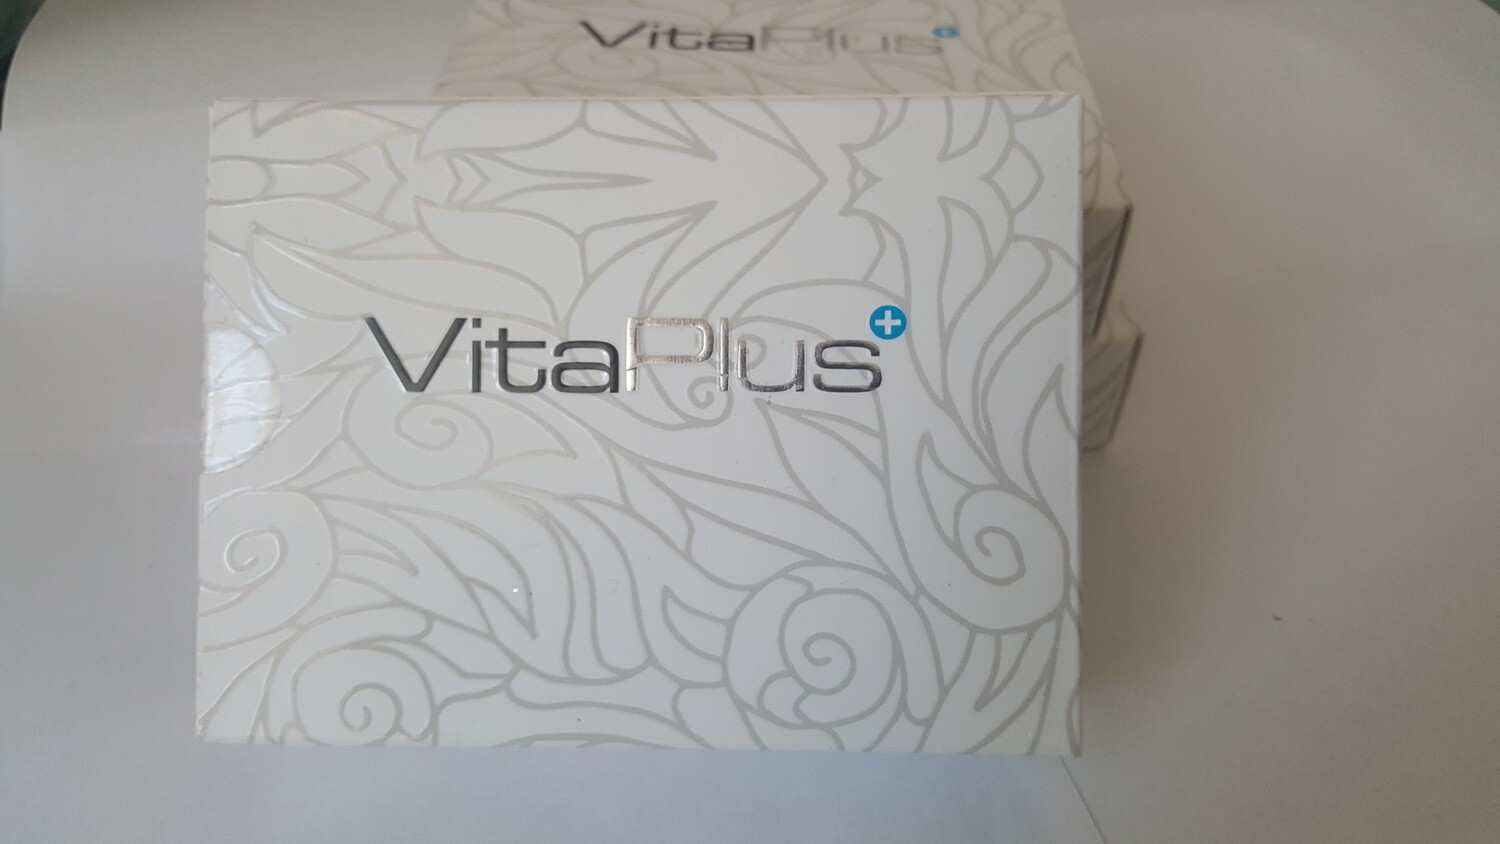 Vita Plus 100% Natural Men Health Supplement Powder-
12 X 2.5g Sachets